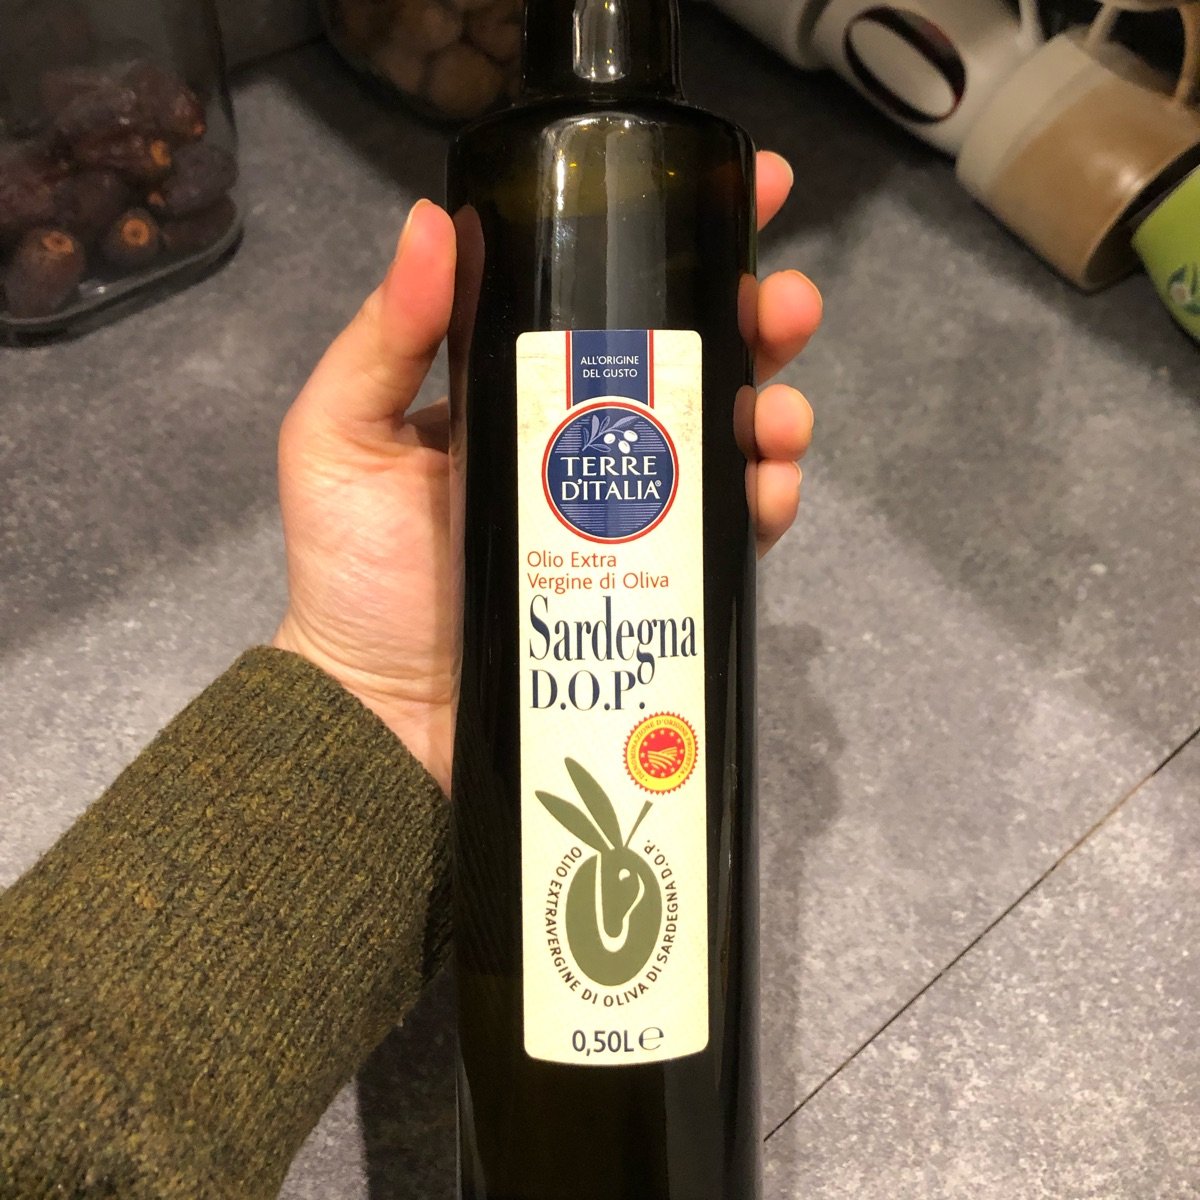 Terre d'Italia olio extra vergine di oliva sardegna dop Reviews | abillion